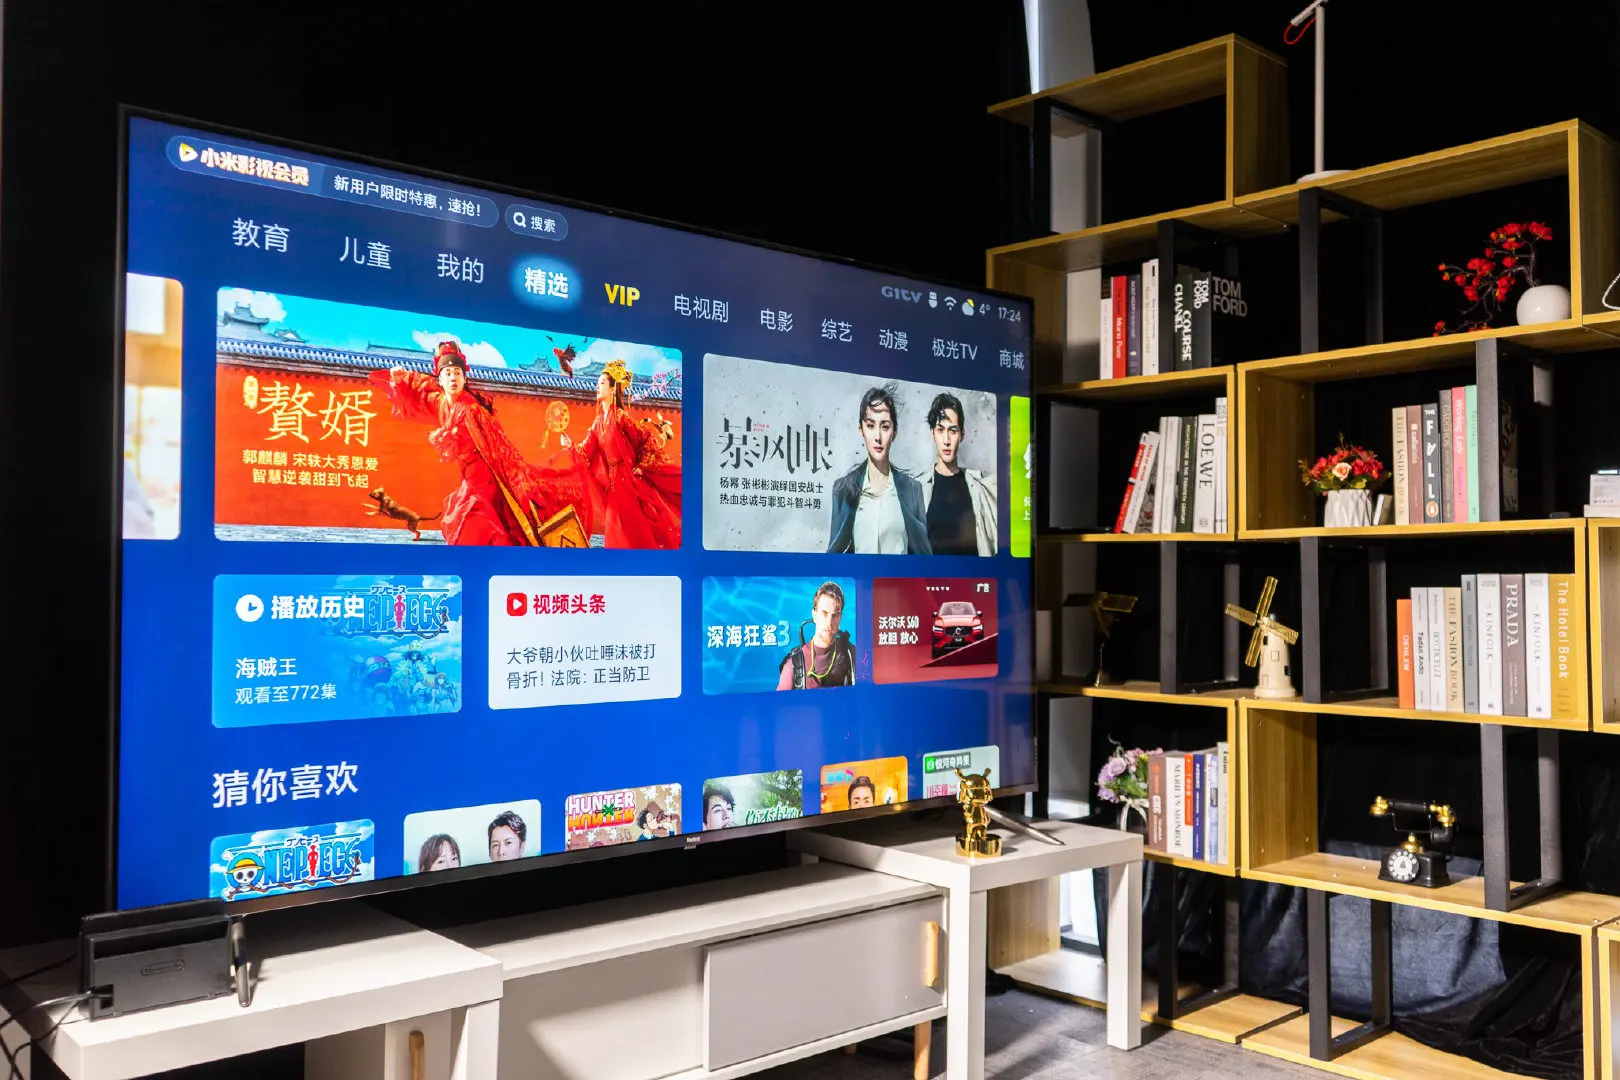 Xiaomi ra mắt Redmi
MAX TV 86 inch: Hỗ trợ 4K, tần số quét 120Hz, HDMI v2.1, giá
28.5 triệu đồng